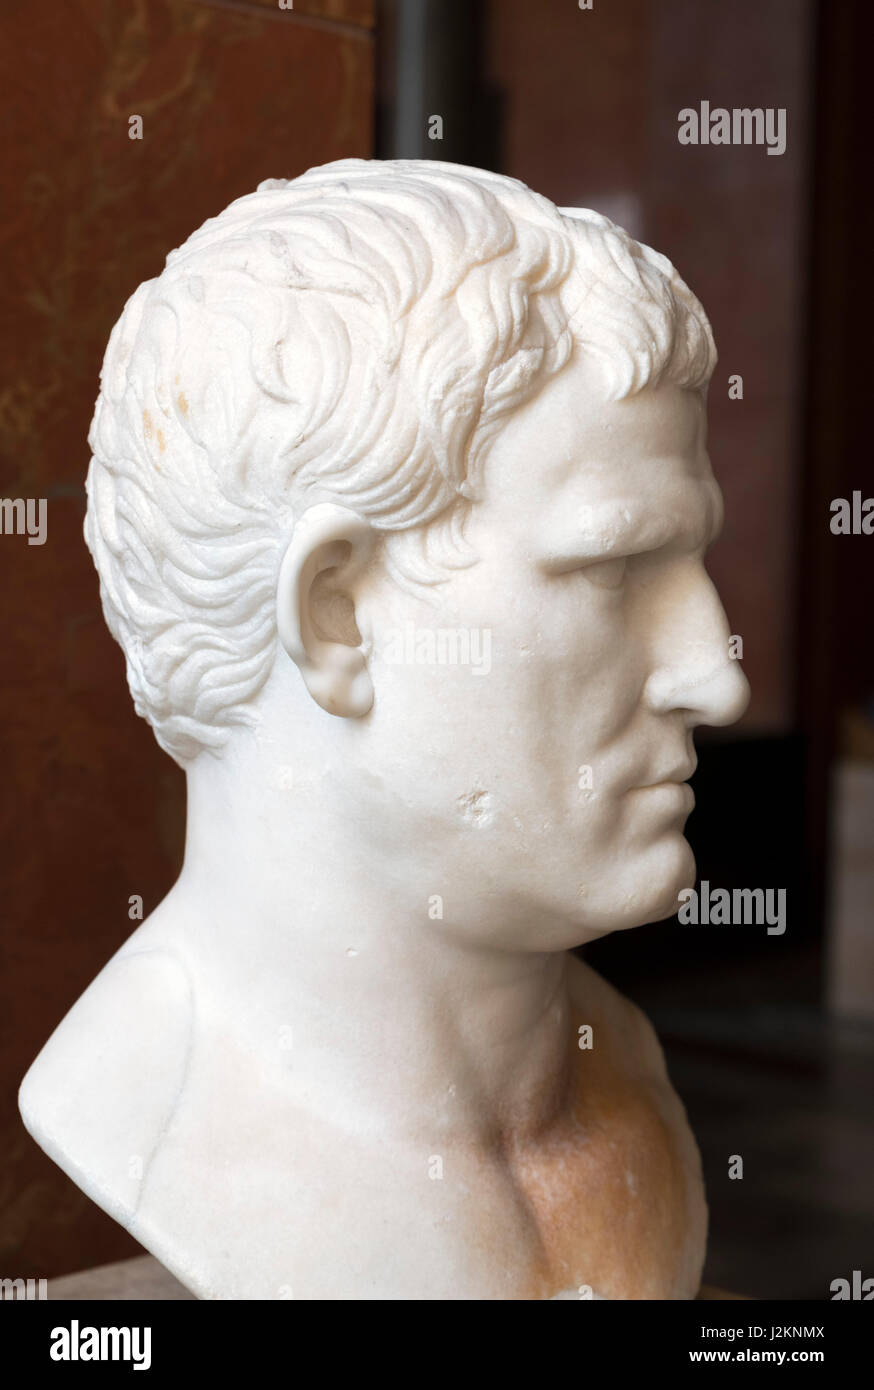 Marmor-Kopf von Marcus Vipsanius Agrippa (64/62 BCâ€ "12 v. Chr.), ca. 25-24 v. Chr.. Agrippa war ein römischer Feldherr und Schwiegersohn des Kaisers Augustus. Stockfoto